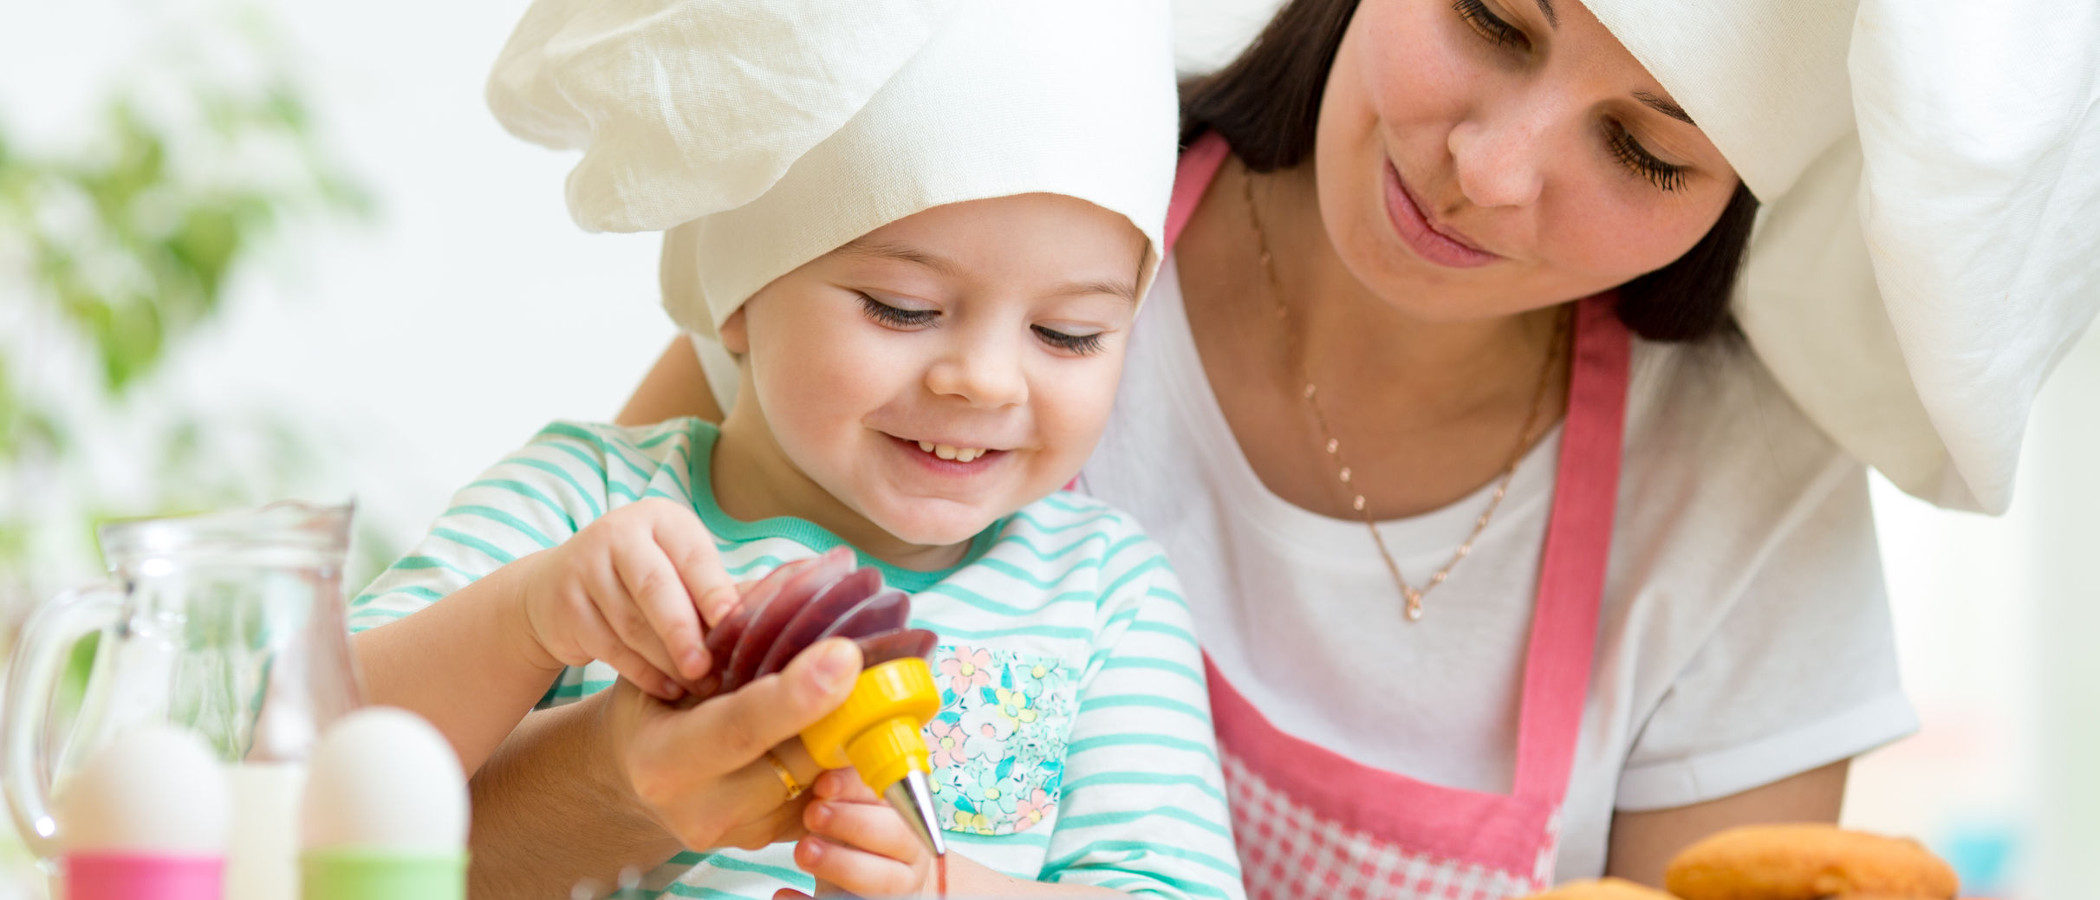 Diabetes infantil: ¿pueden los niños comer alimentos dulces sin azúcar?